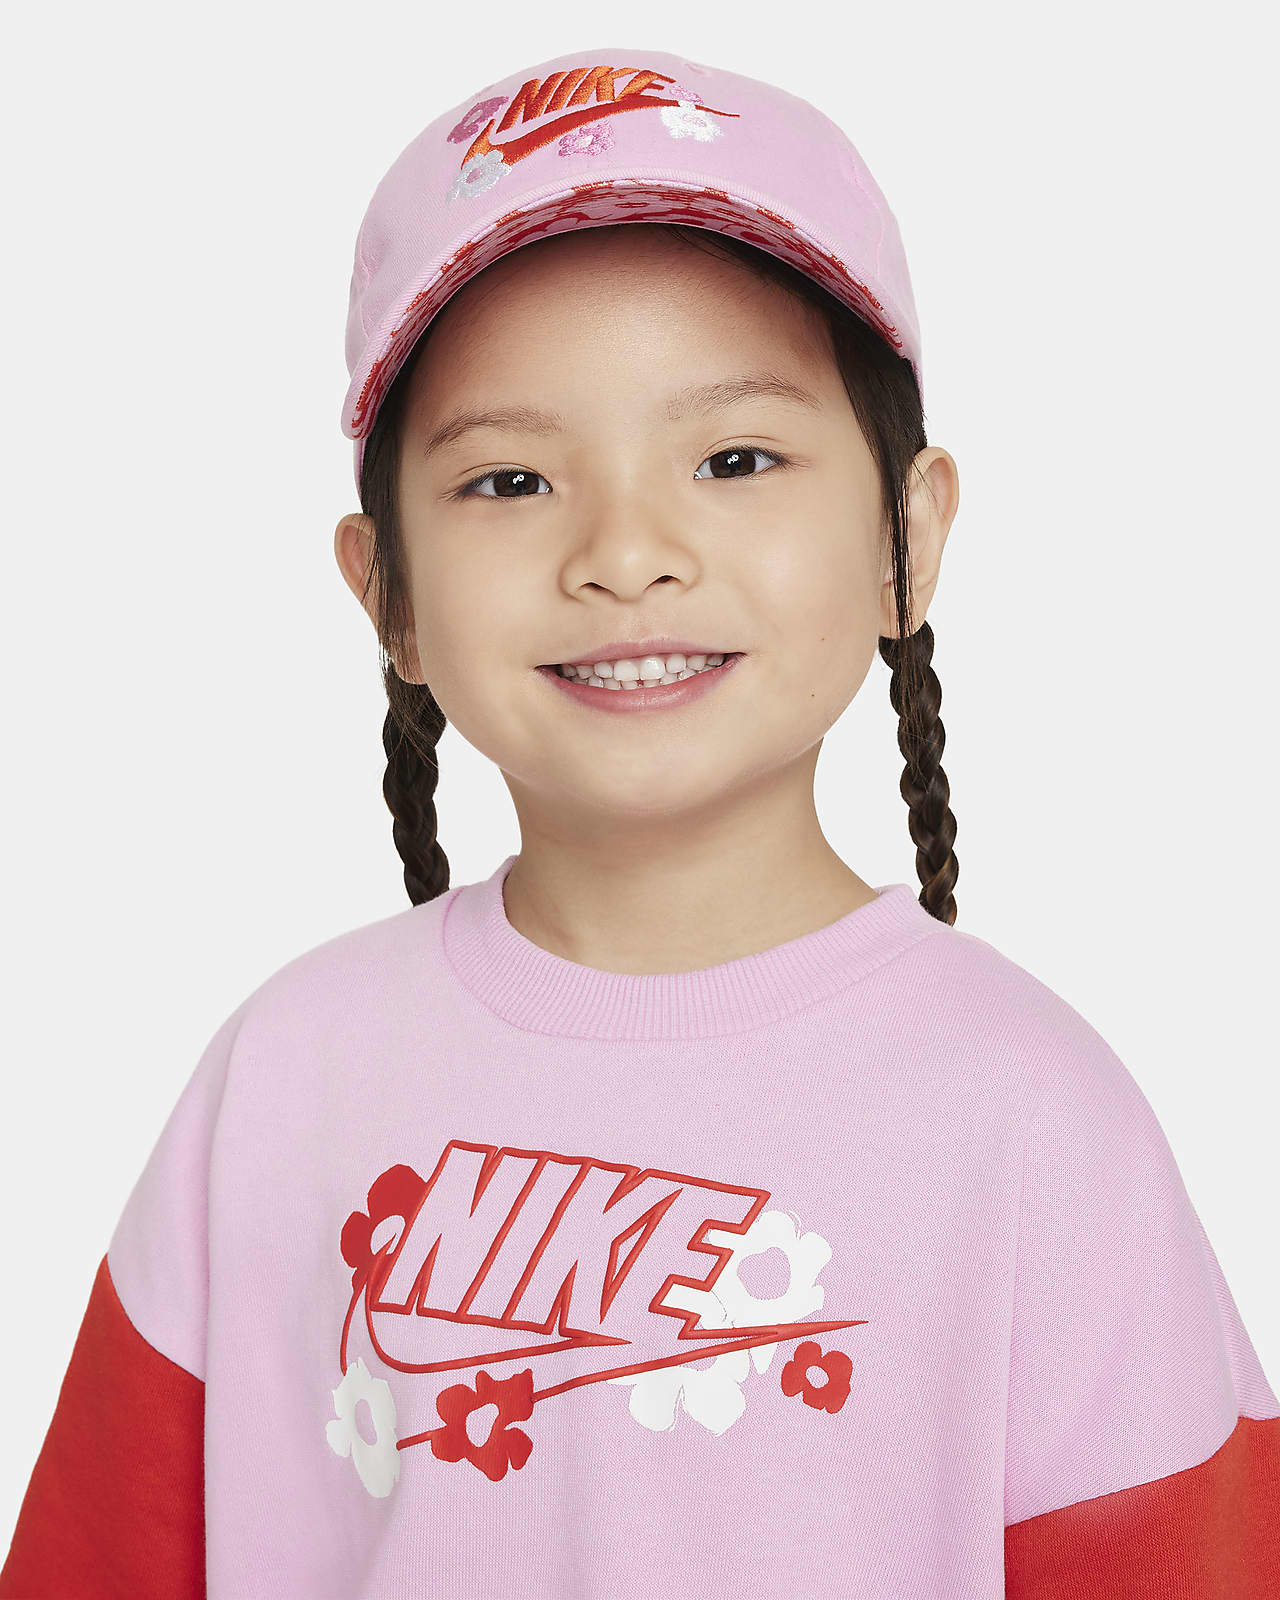 Nike Girls' Futura Curve Brim Cap, Pink, One Size Fits All (4/7)